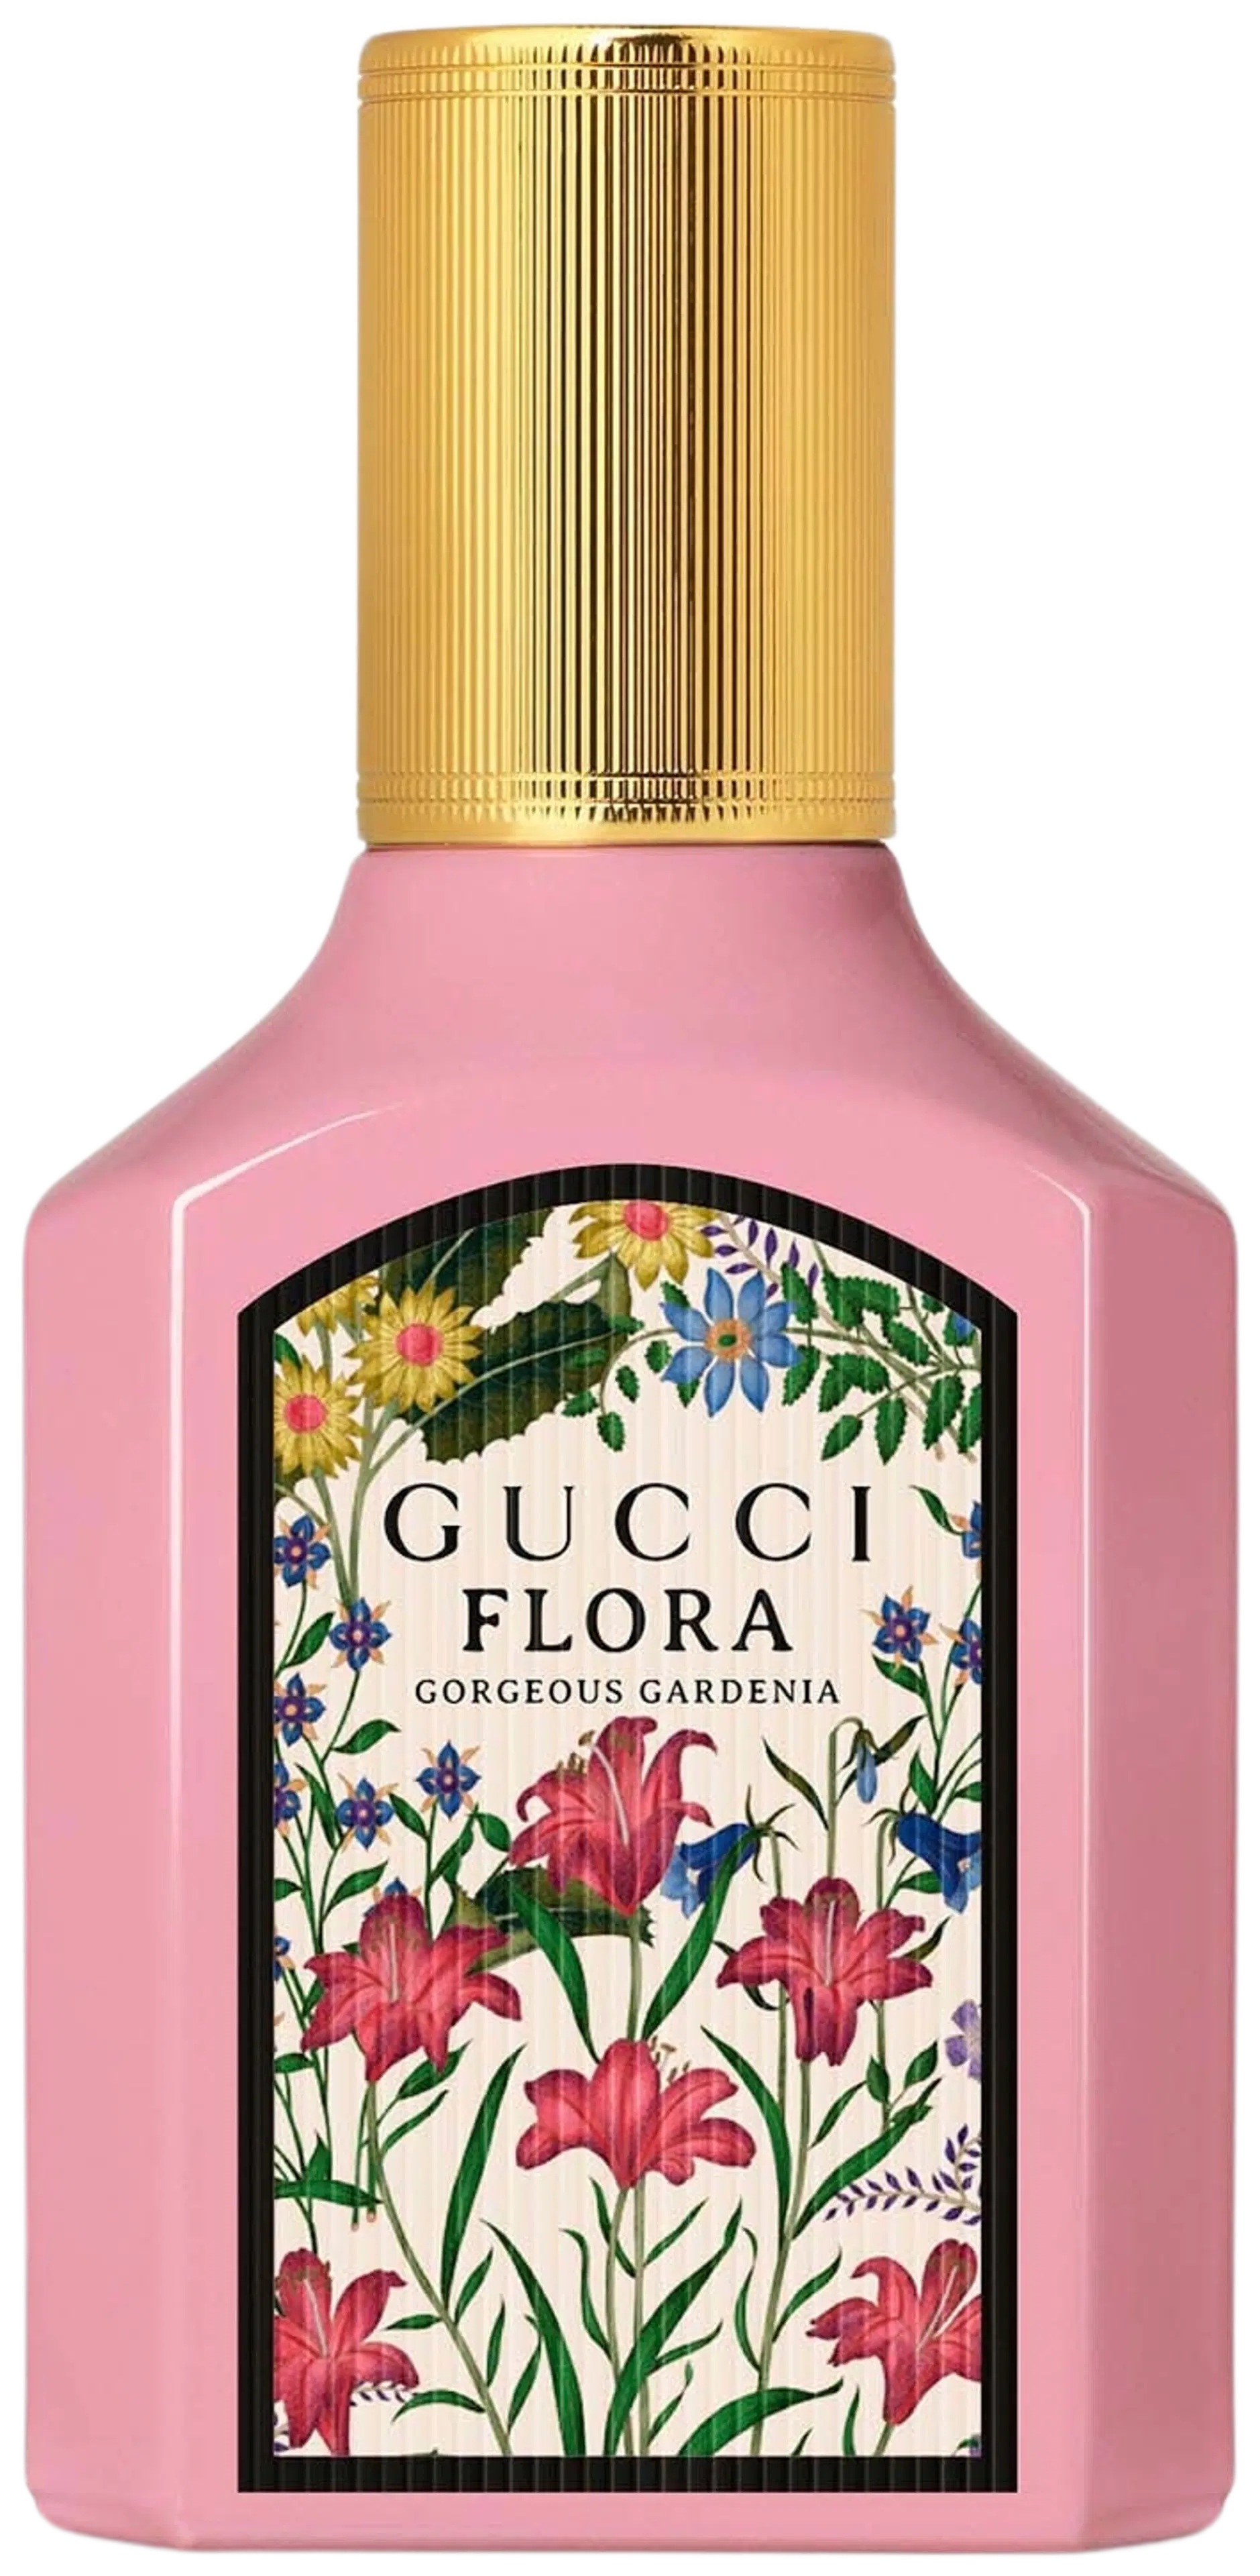 GUCCI Flora Gorgeous Gardenia EdP tuoksu 30 ml